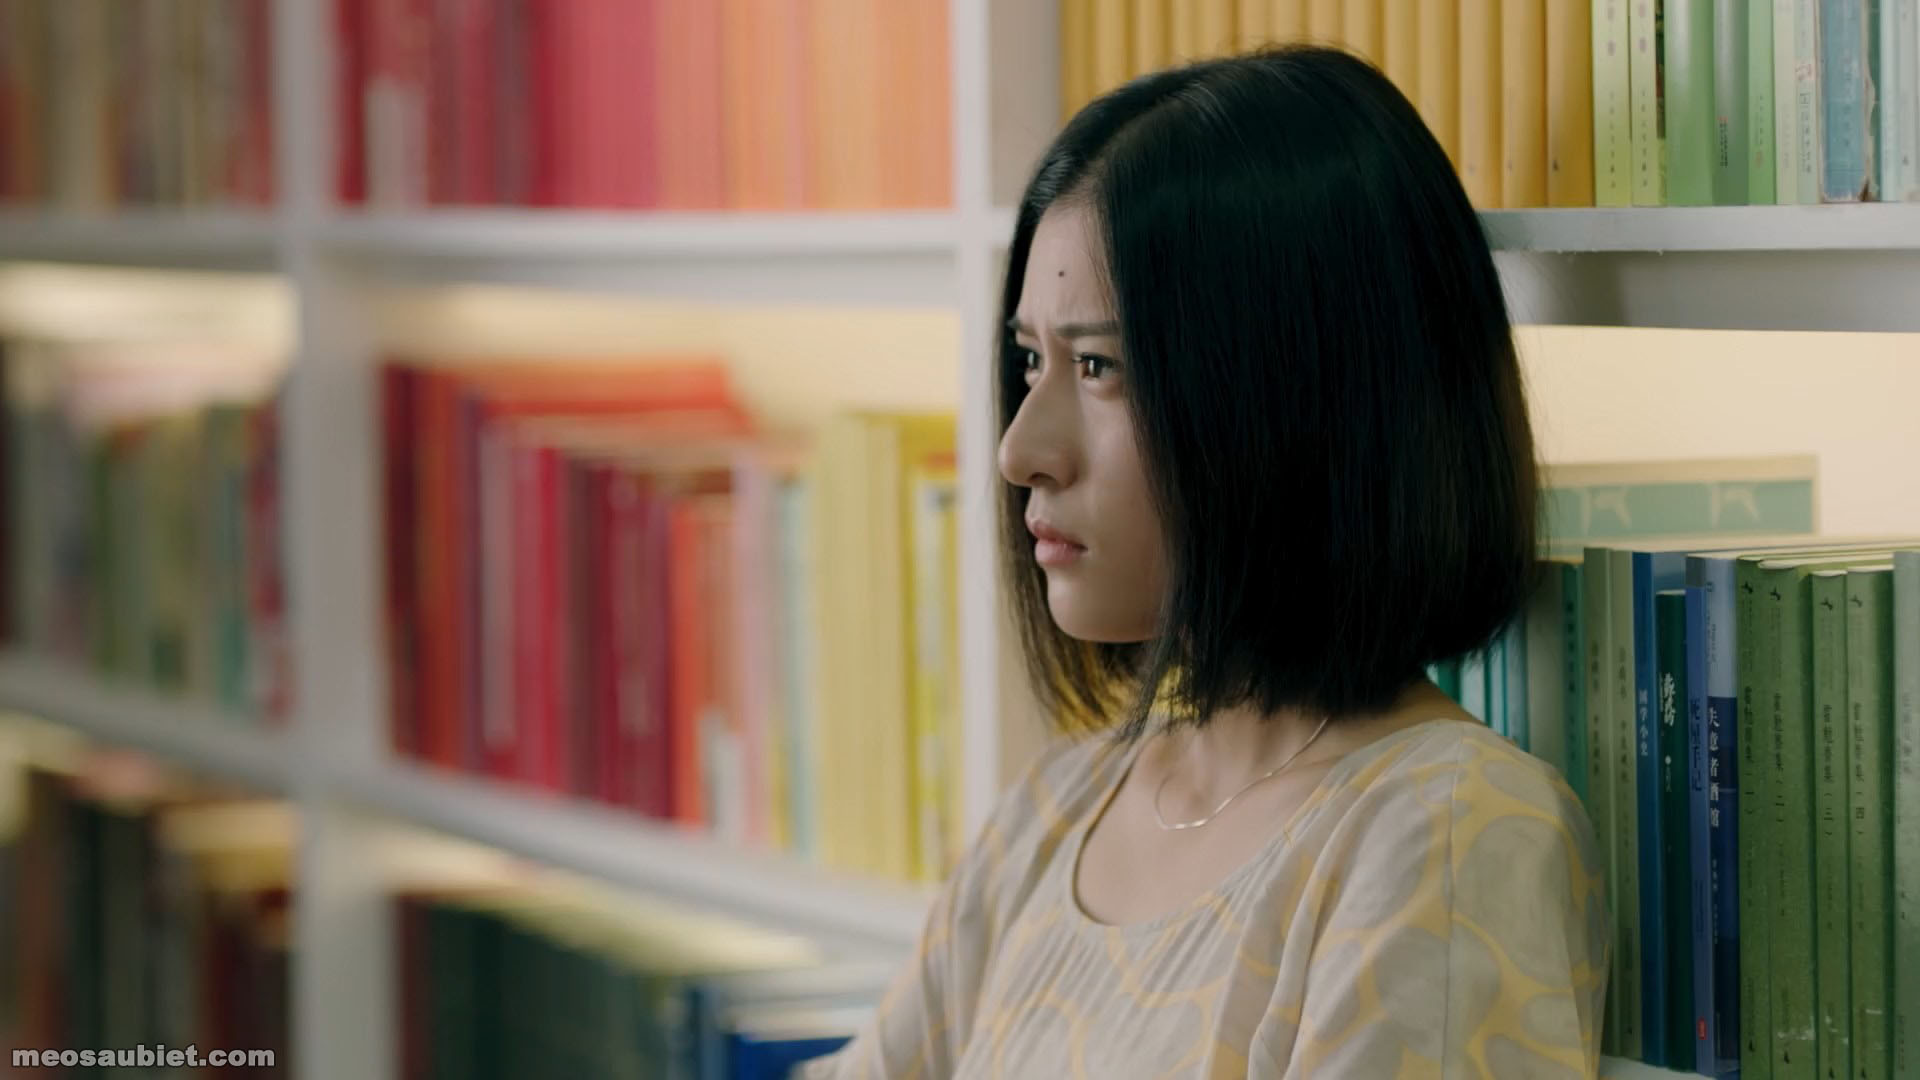 Thiếu nữ lấp lánh 2019 ( bản truyền hình ) Lý Diễm Thần trong vai Trần Hòa Húc